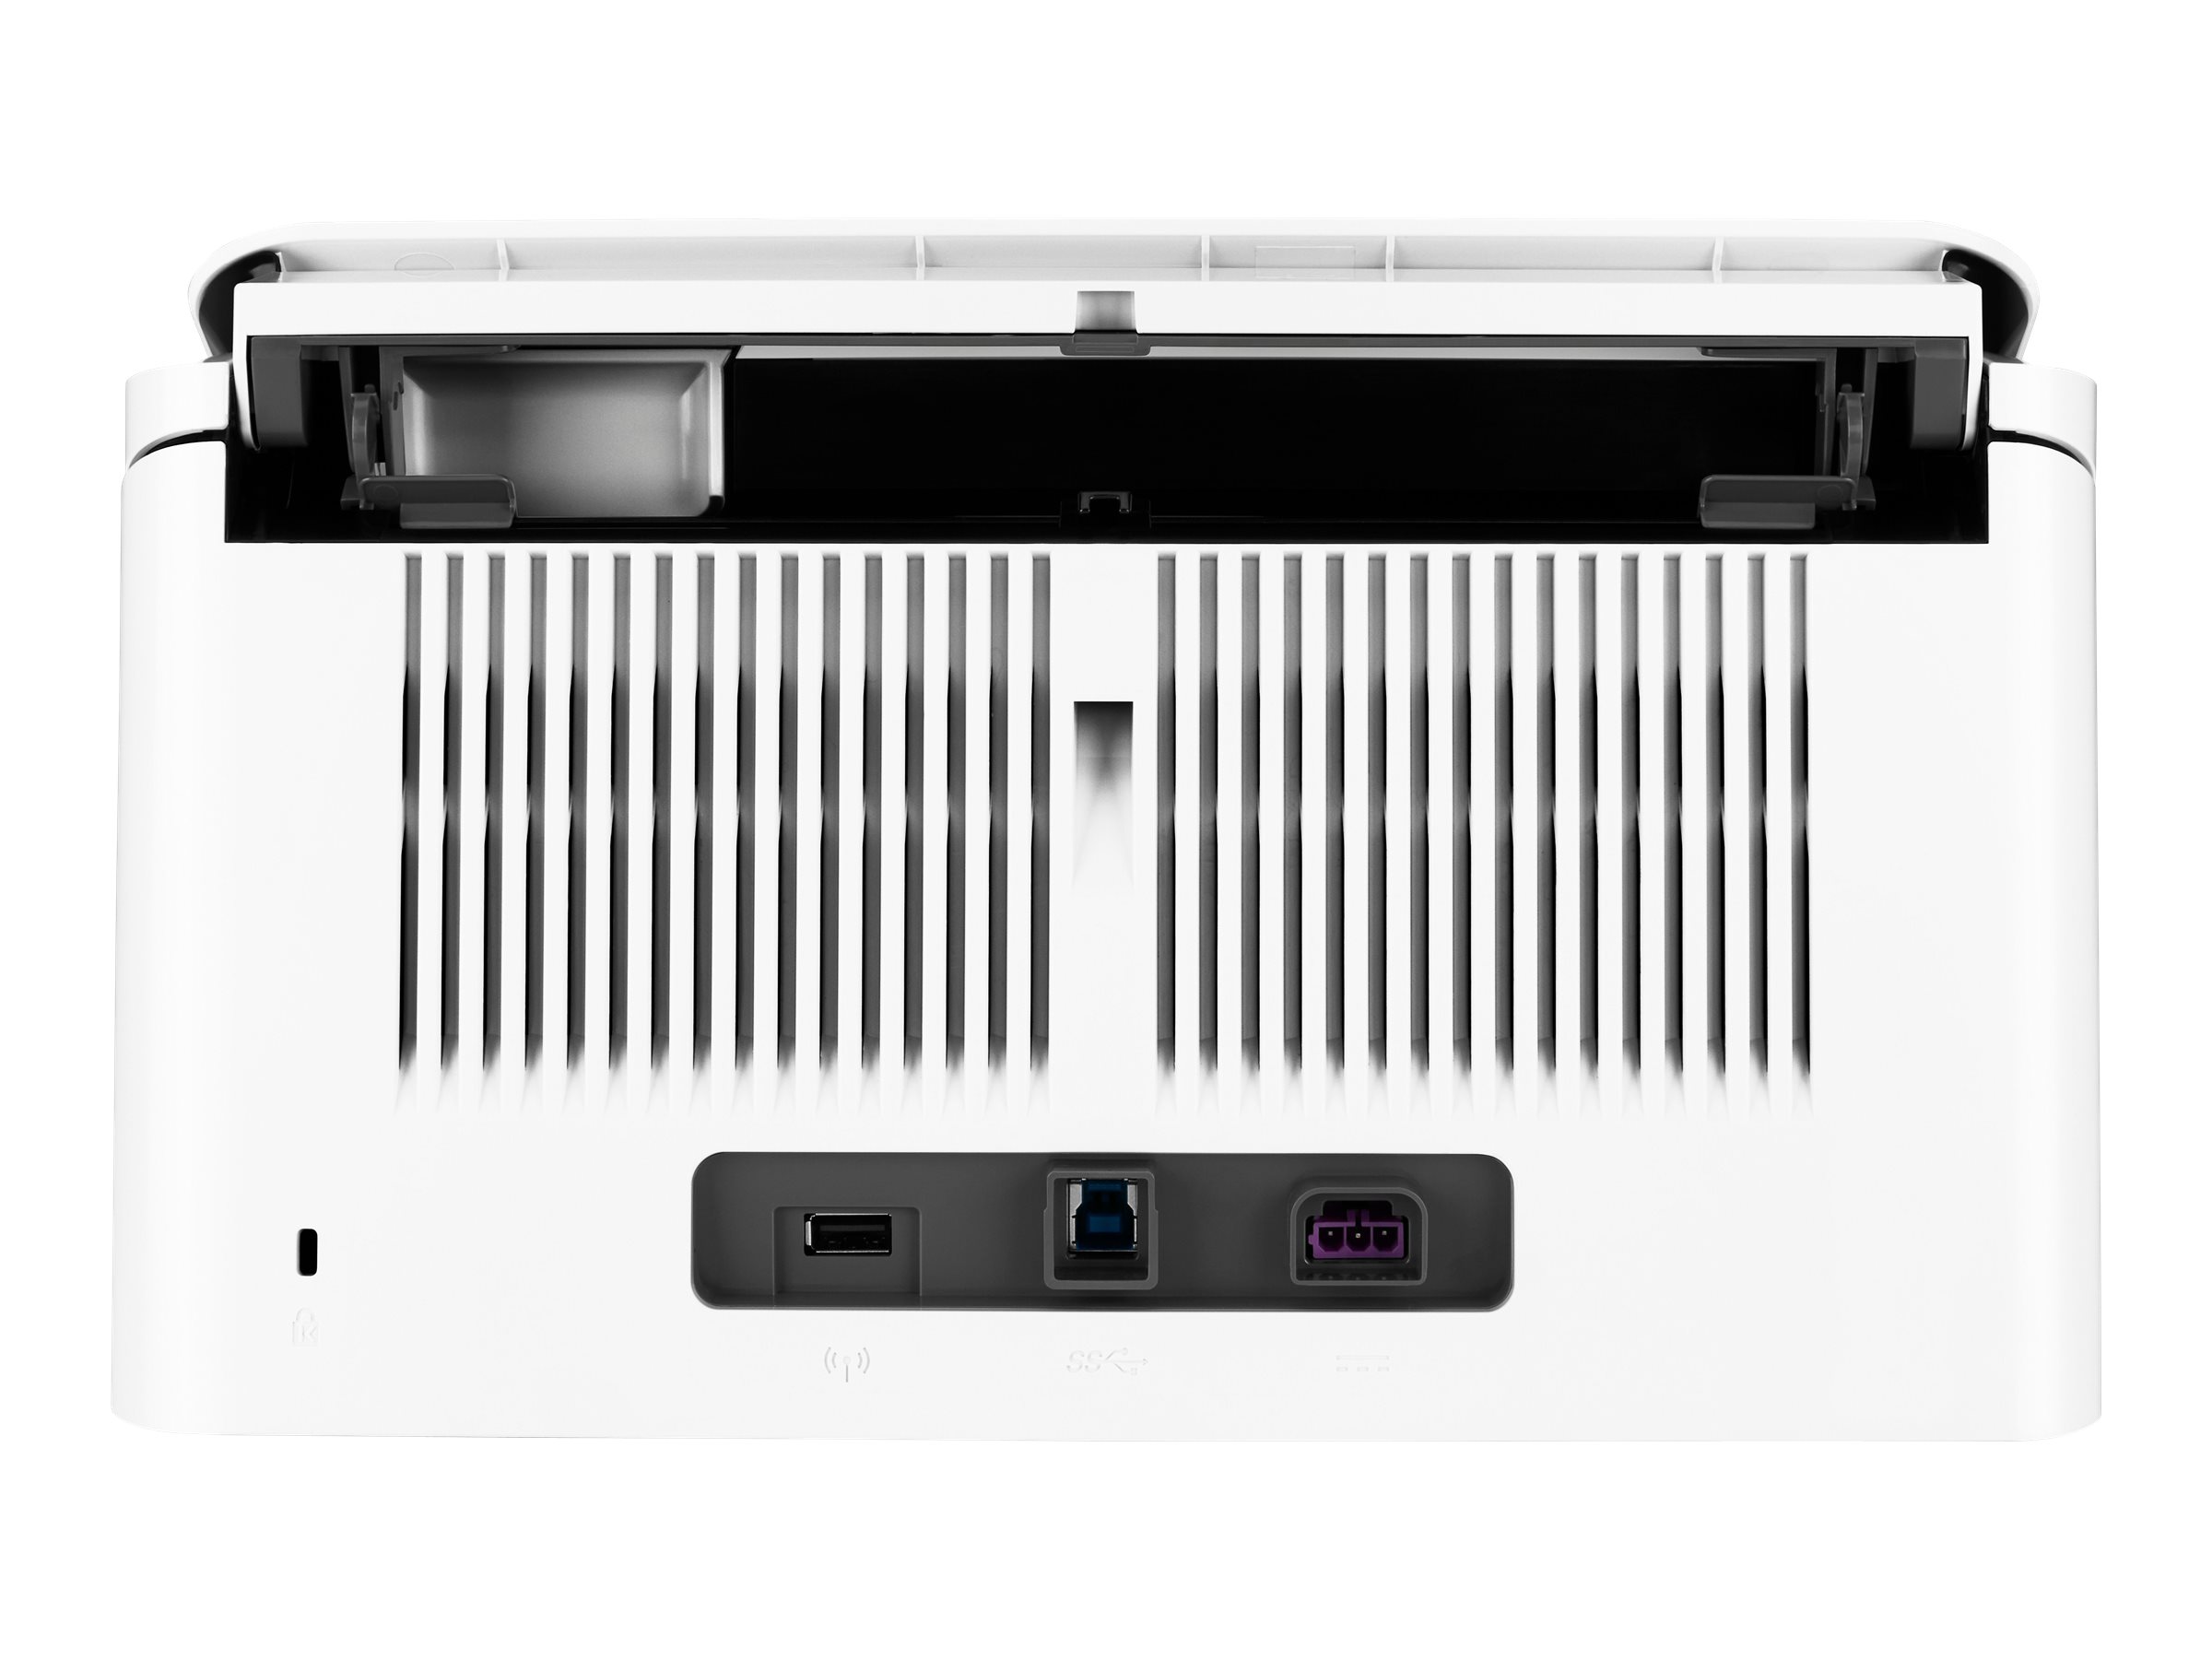 HP ScanJet Enterprise Flow 7000 s3 - Dokumentenscanner - Duplex - 216 x 3100 mm - 600 dpi x 600 dpi - bis zu 75 Seiten/Min. (einfarbig)